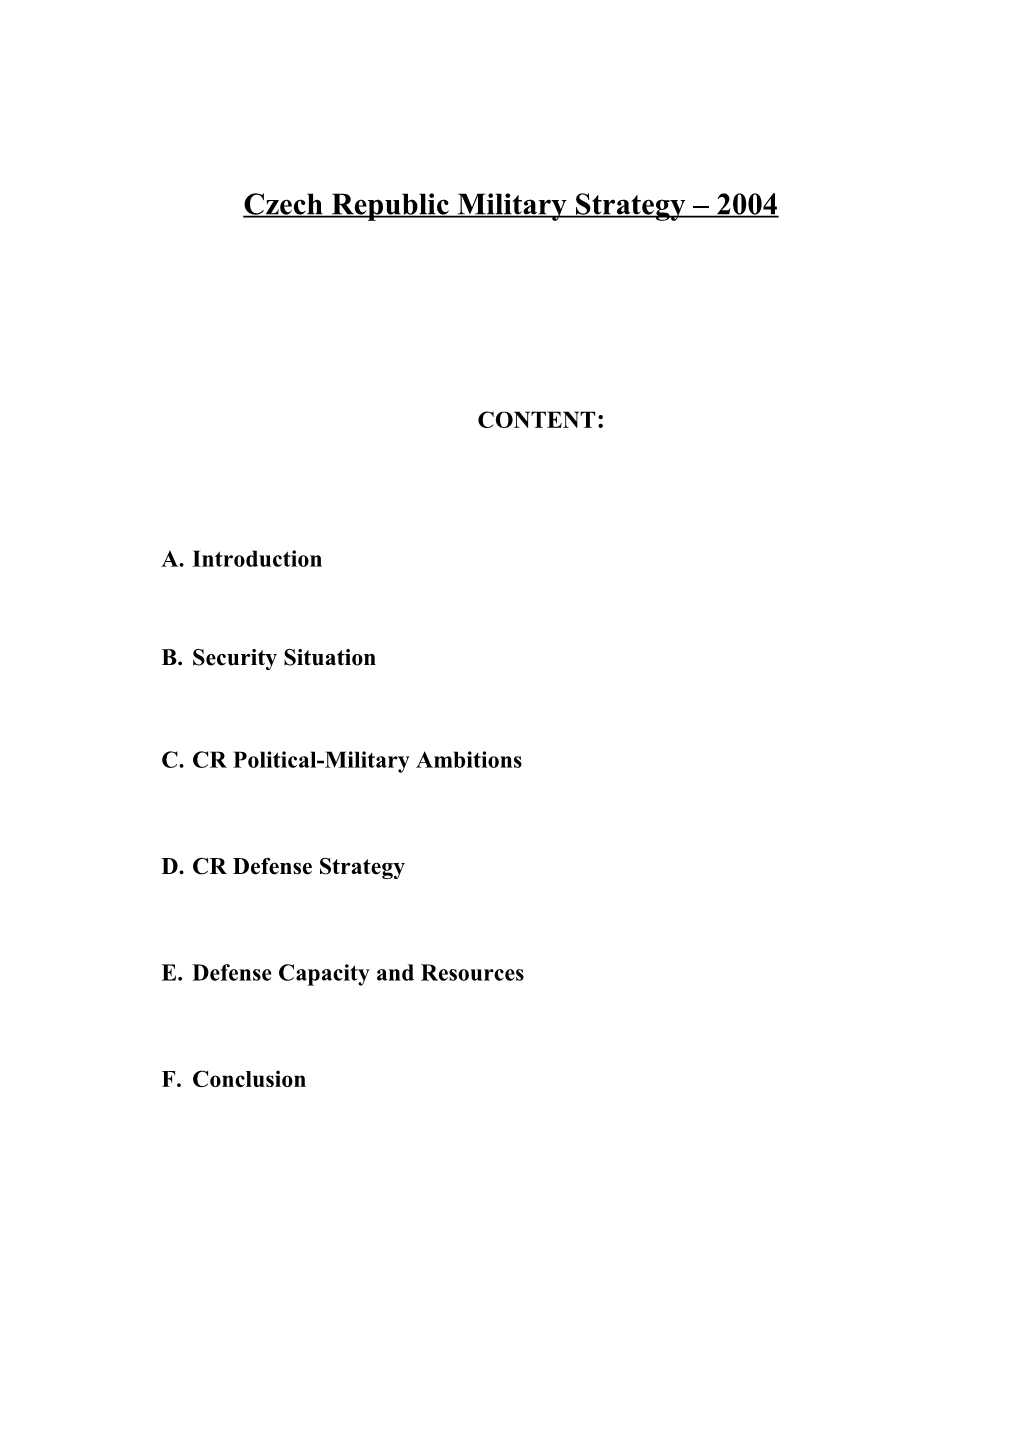 Czechrepublic Military Strategy 2004